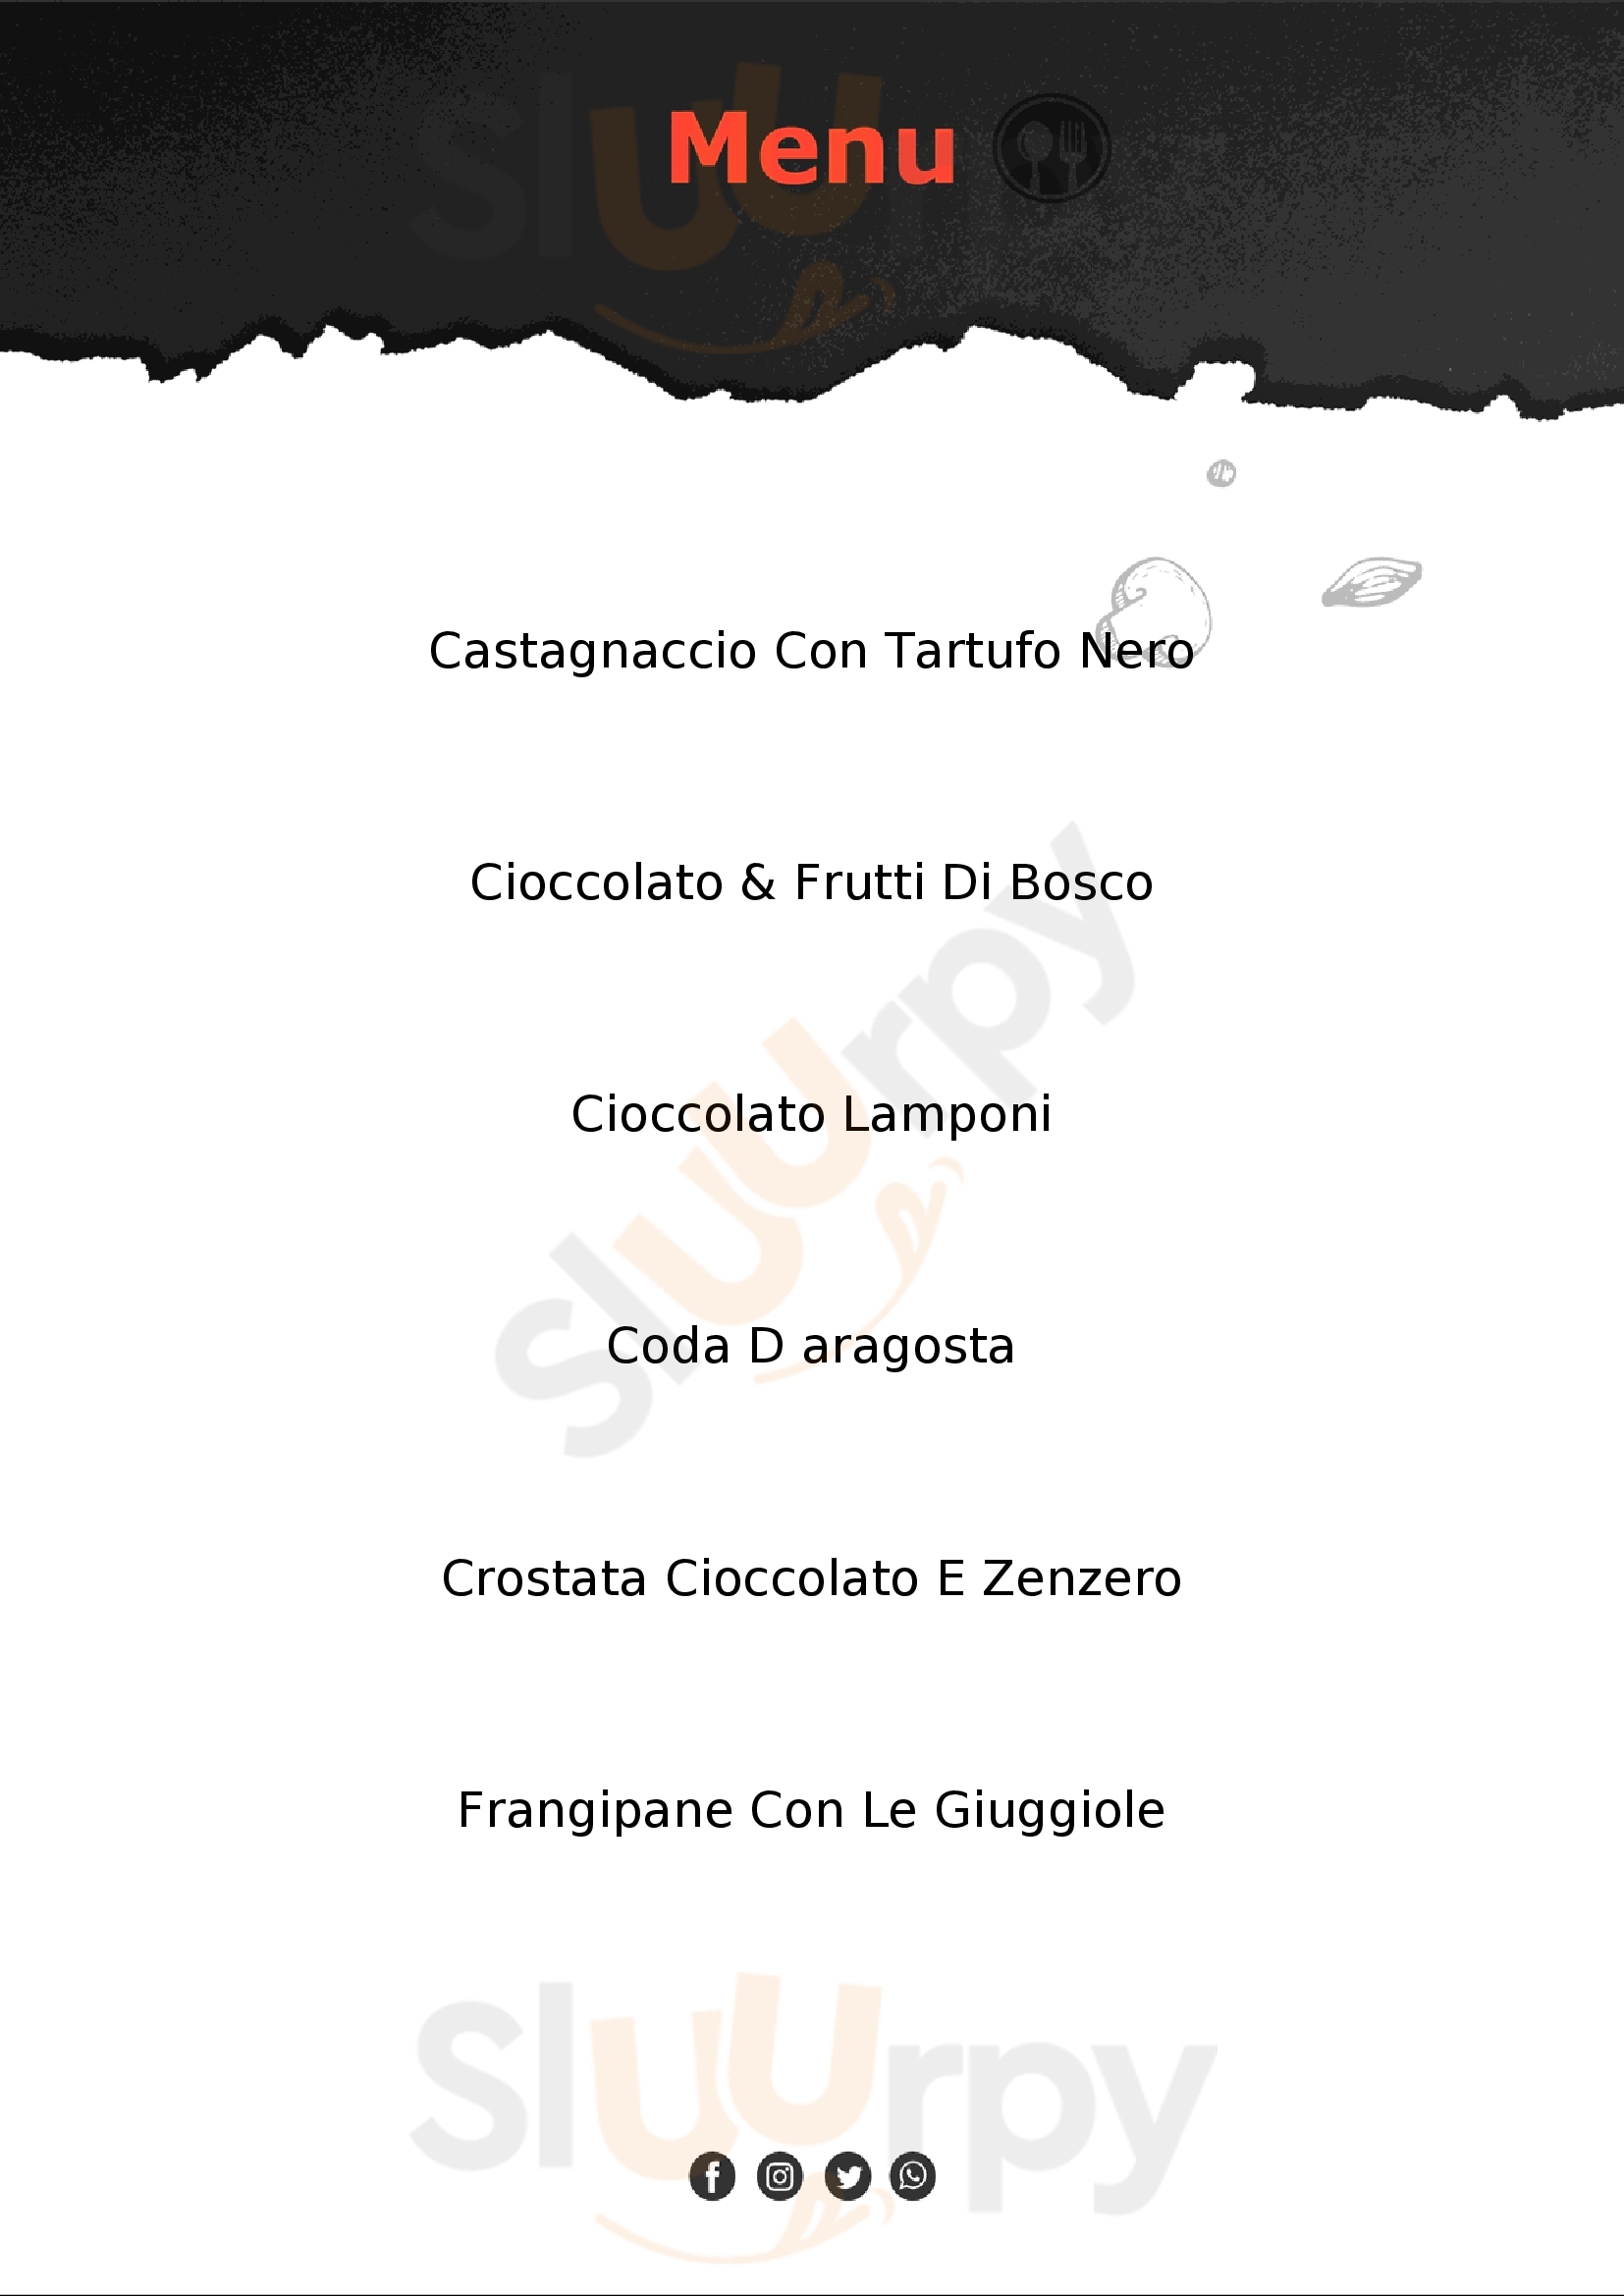 Pasticceria & Dessert - Marcello Rapisardi Milano menù 1 pagina